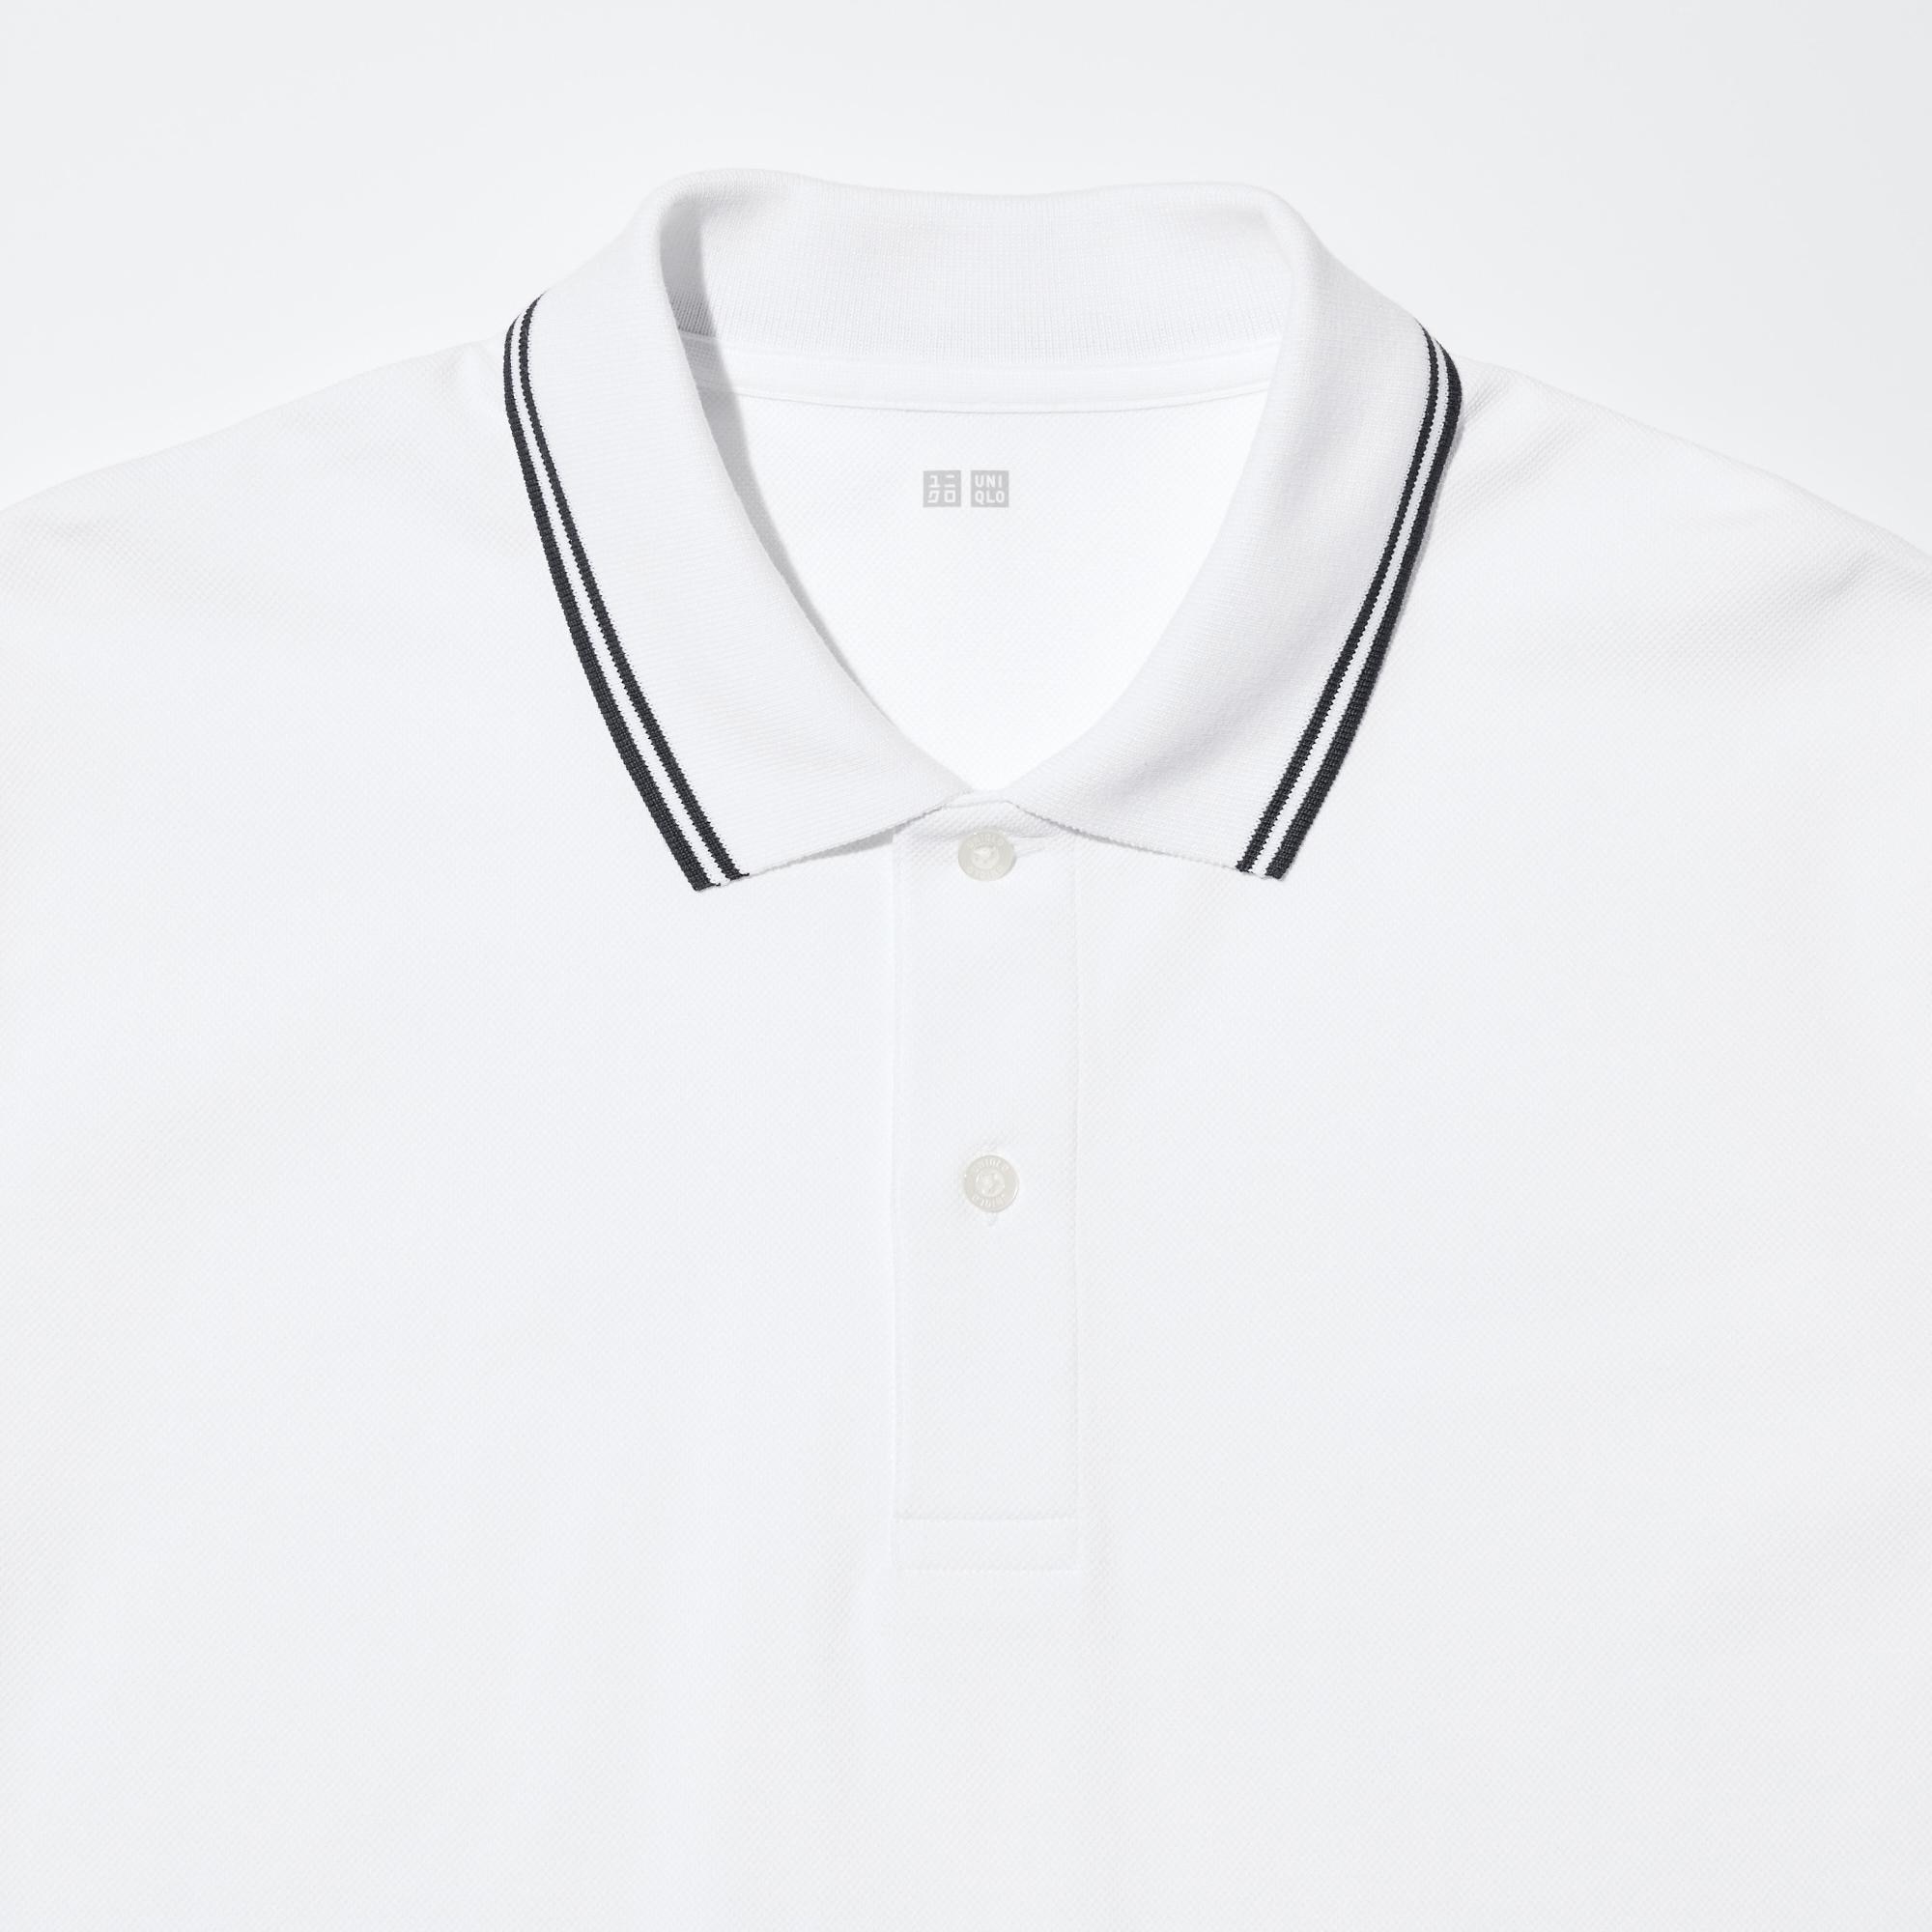 Dry Pique Polo Shirt (Tipping Collar)